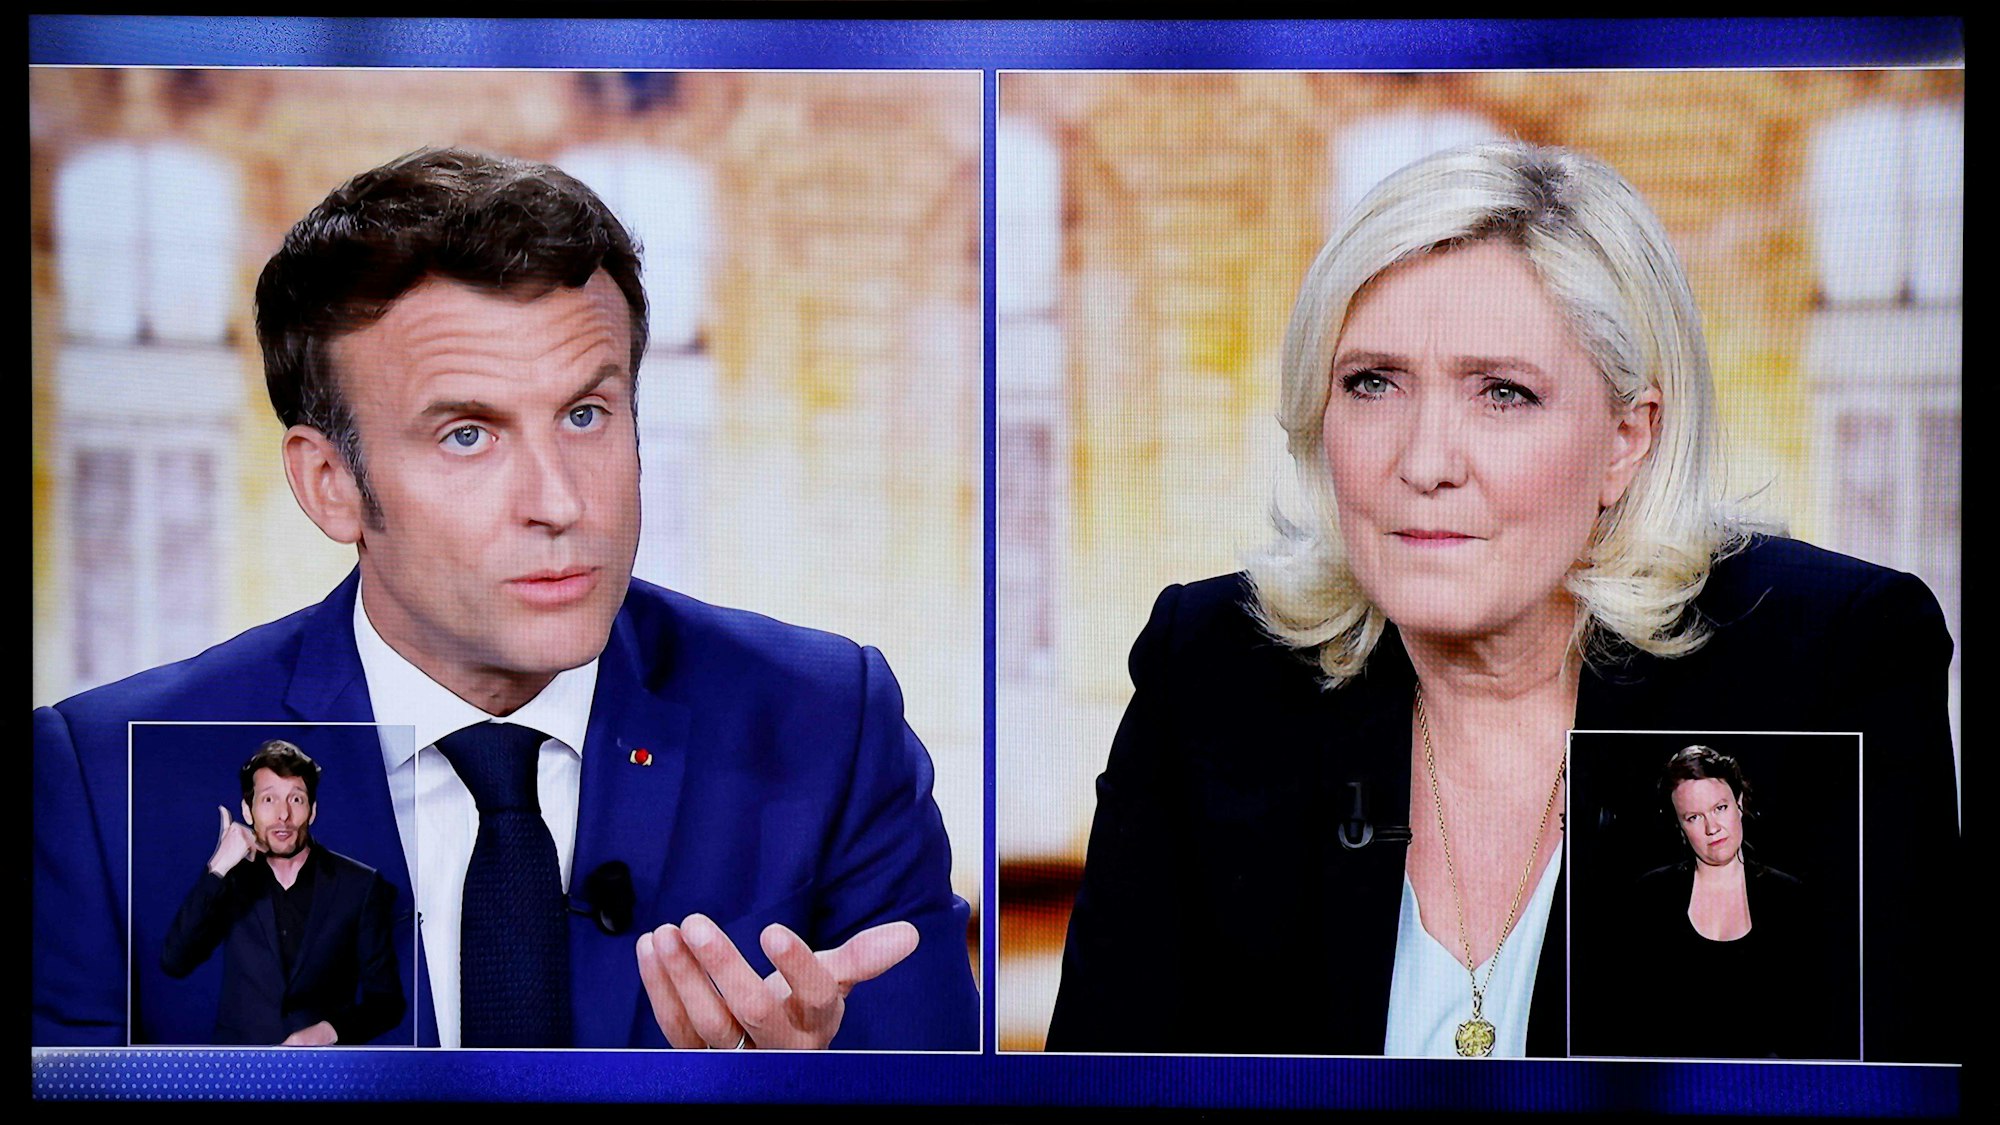 Emmanuel Macron, Präsident von Frankreich und Spitzenkandidat der Partei „La Republique en Marche (LREM)“, und Marine Le Pen, Präsidentschaftskandidatin der rechtsextremen Partei Rassemblement National (RN) am 20. April bei einer TV-Debatte. Am Sonntag (24. April) wählte Frankreich in einer Stichwahl den Präsidenten oder die Präsidentin.